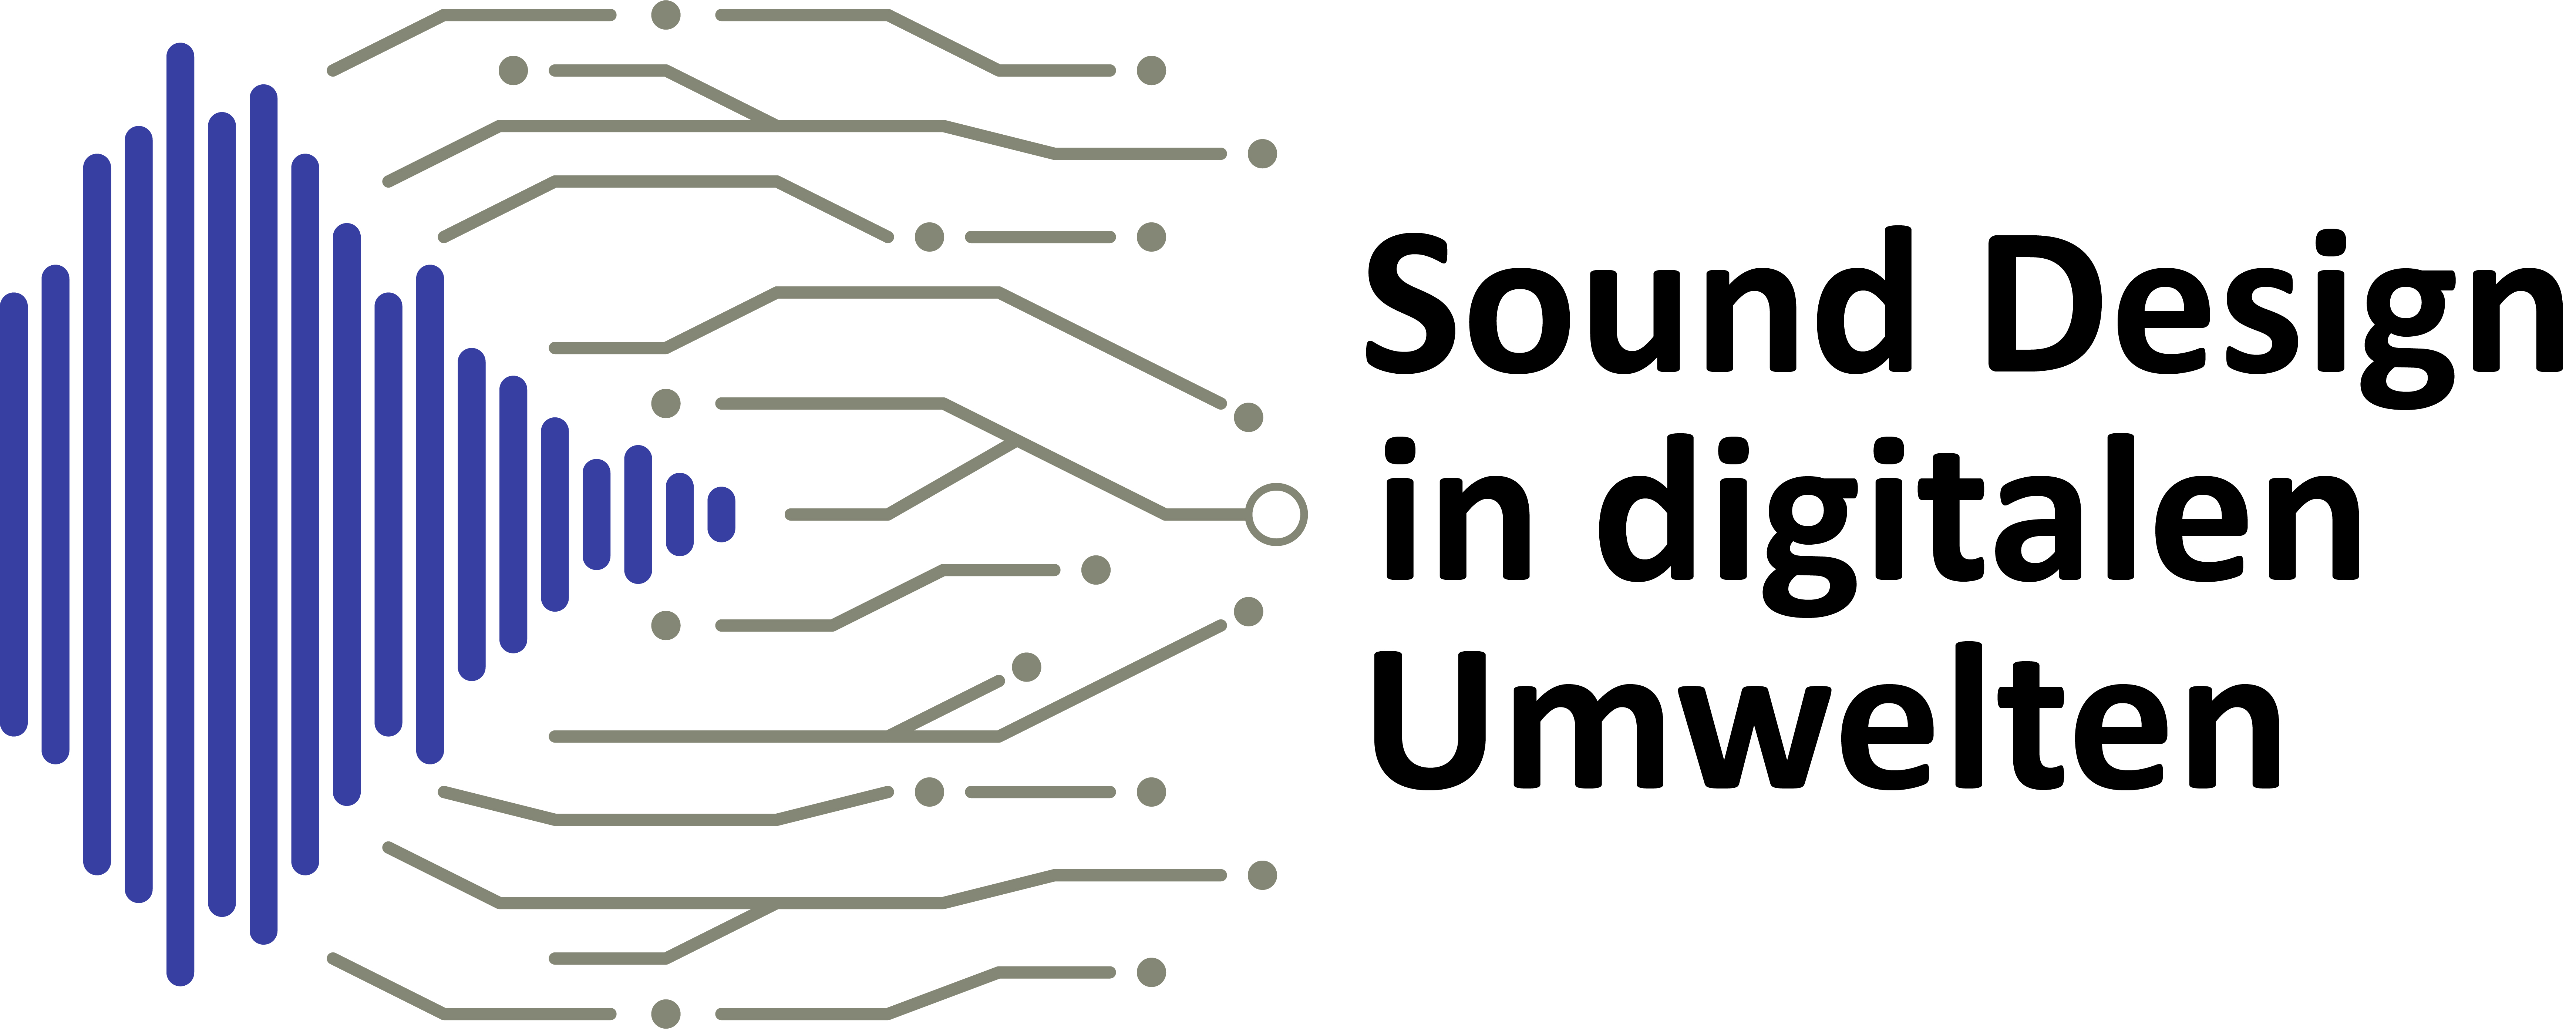 Sound Design in digitalen Umwelten